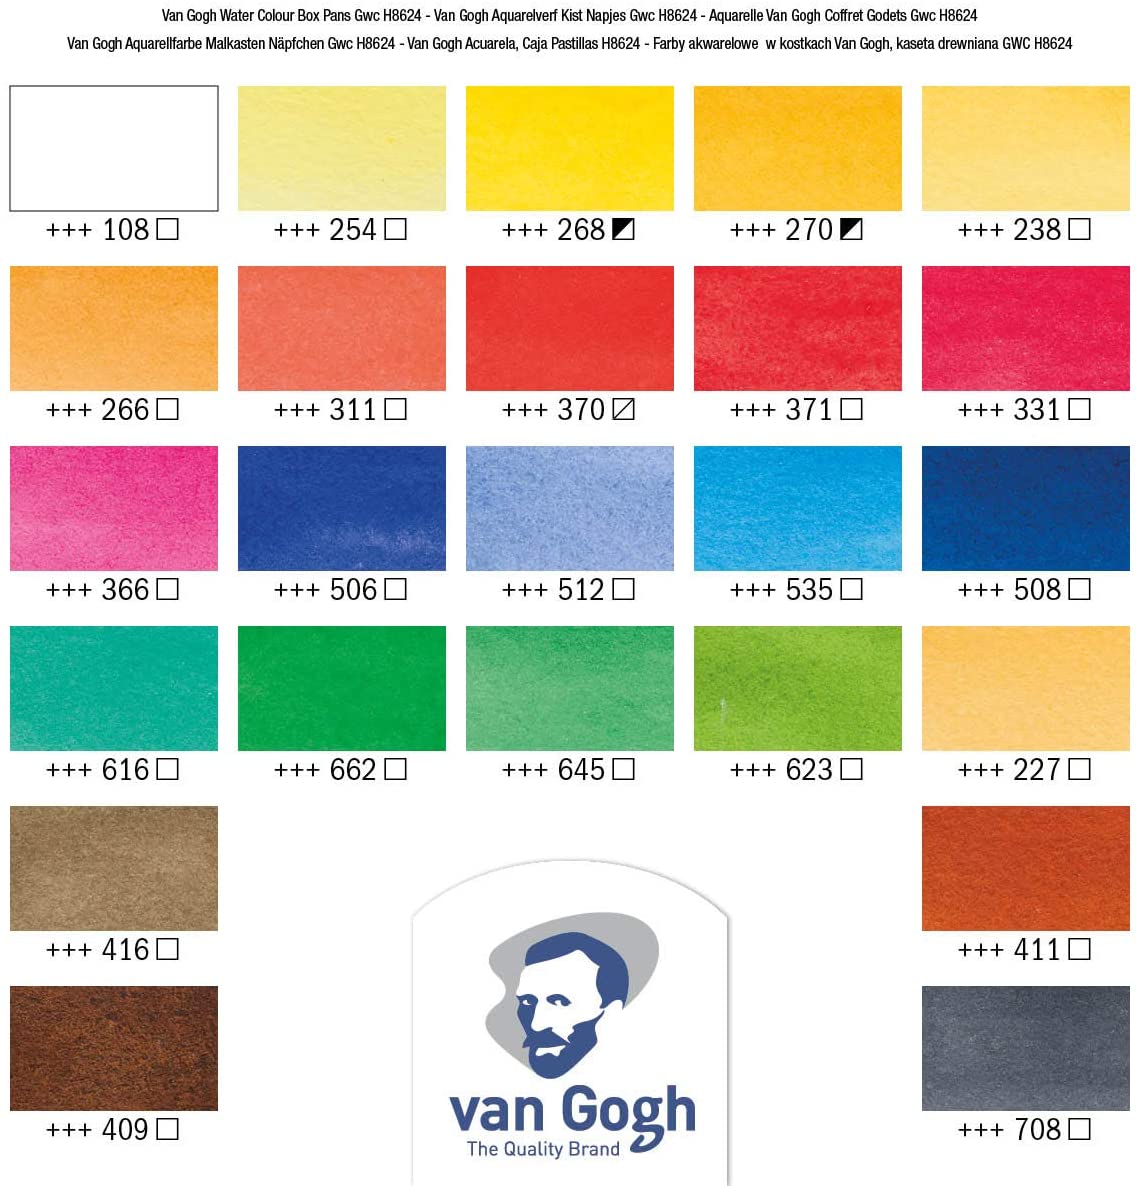 Van Gogh Watercolor Paint Set shades